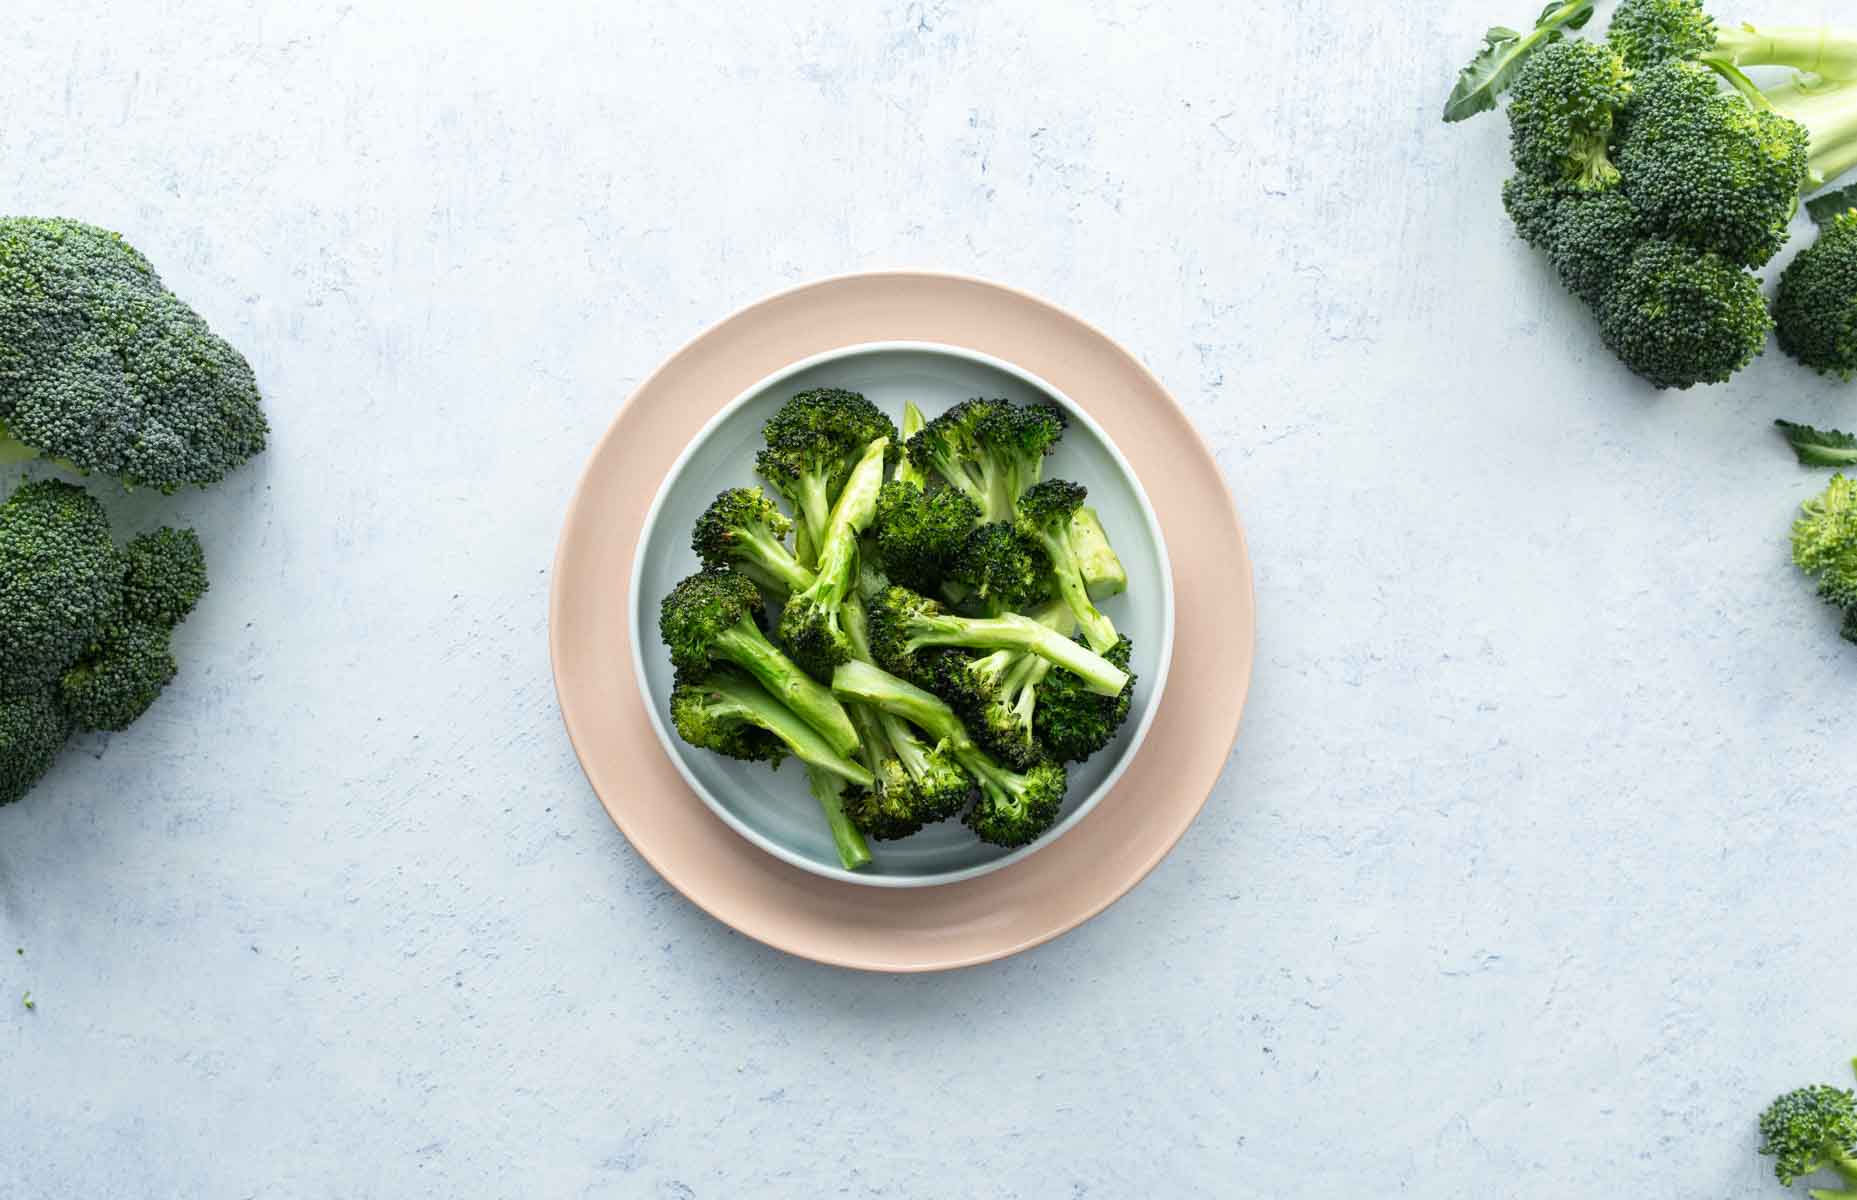 roasted broccoli on plate